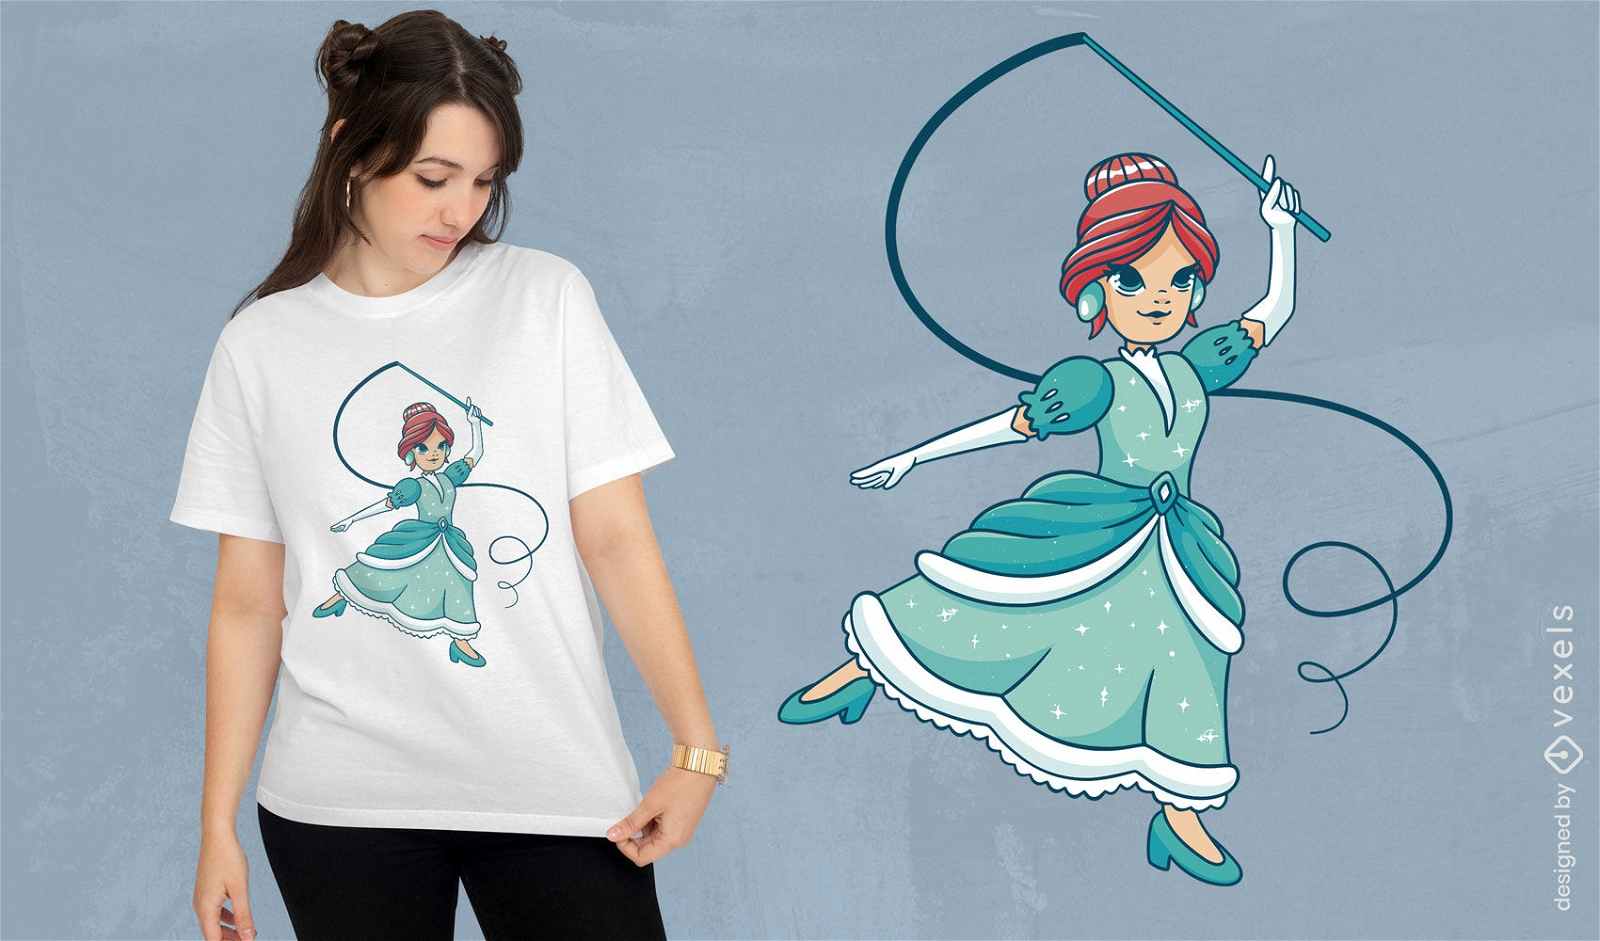 Princess dancing cartoon t-shirt design